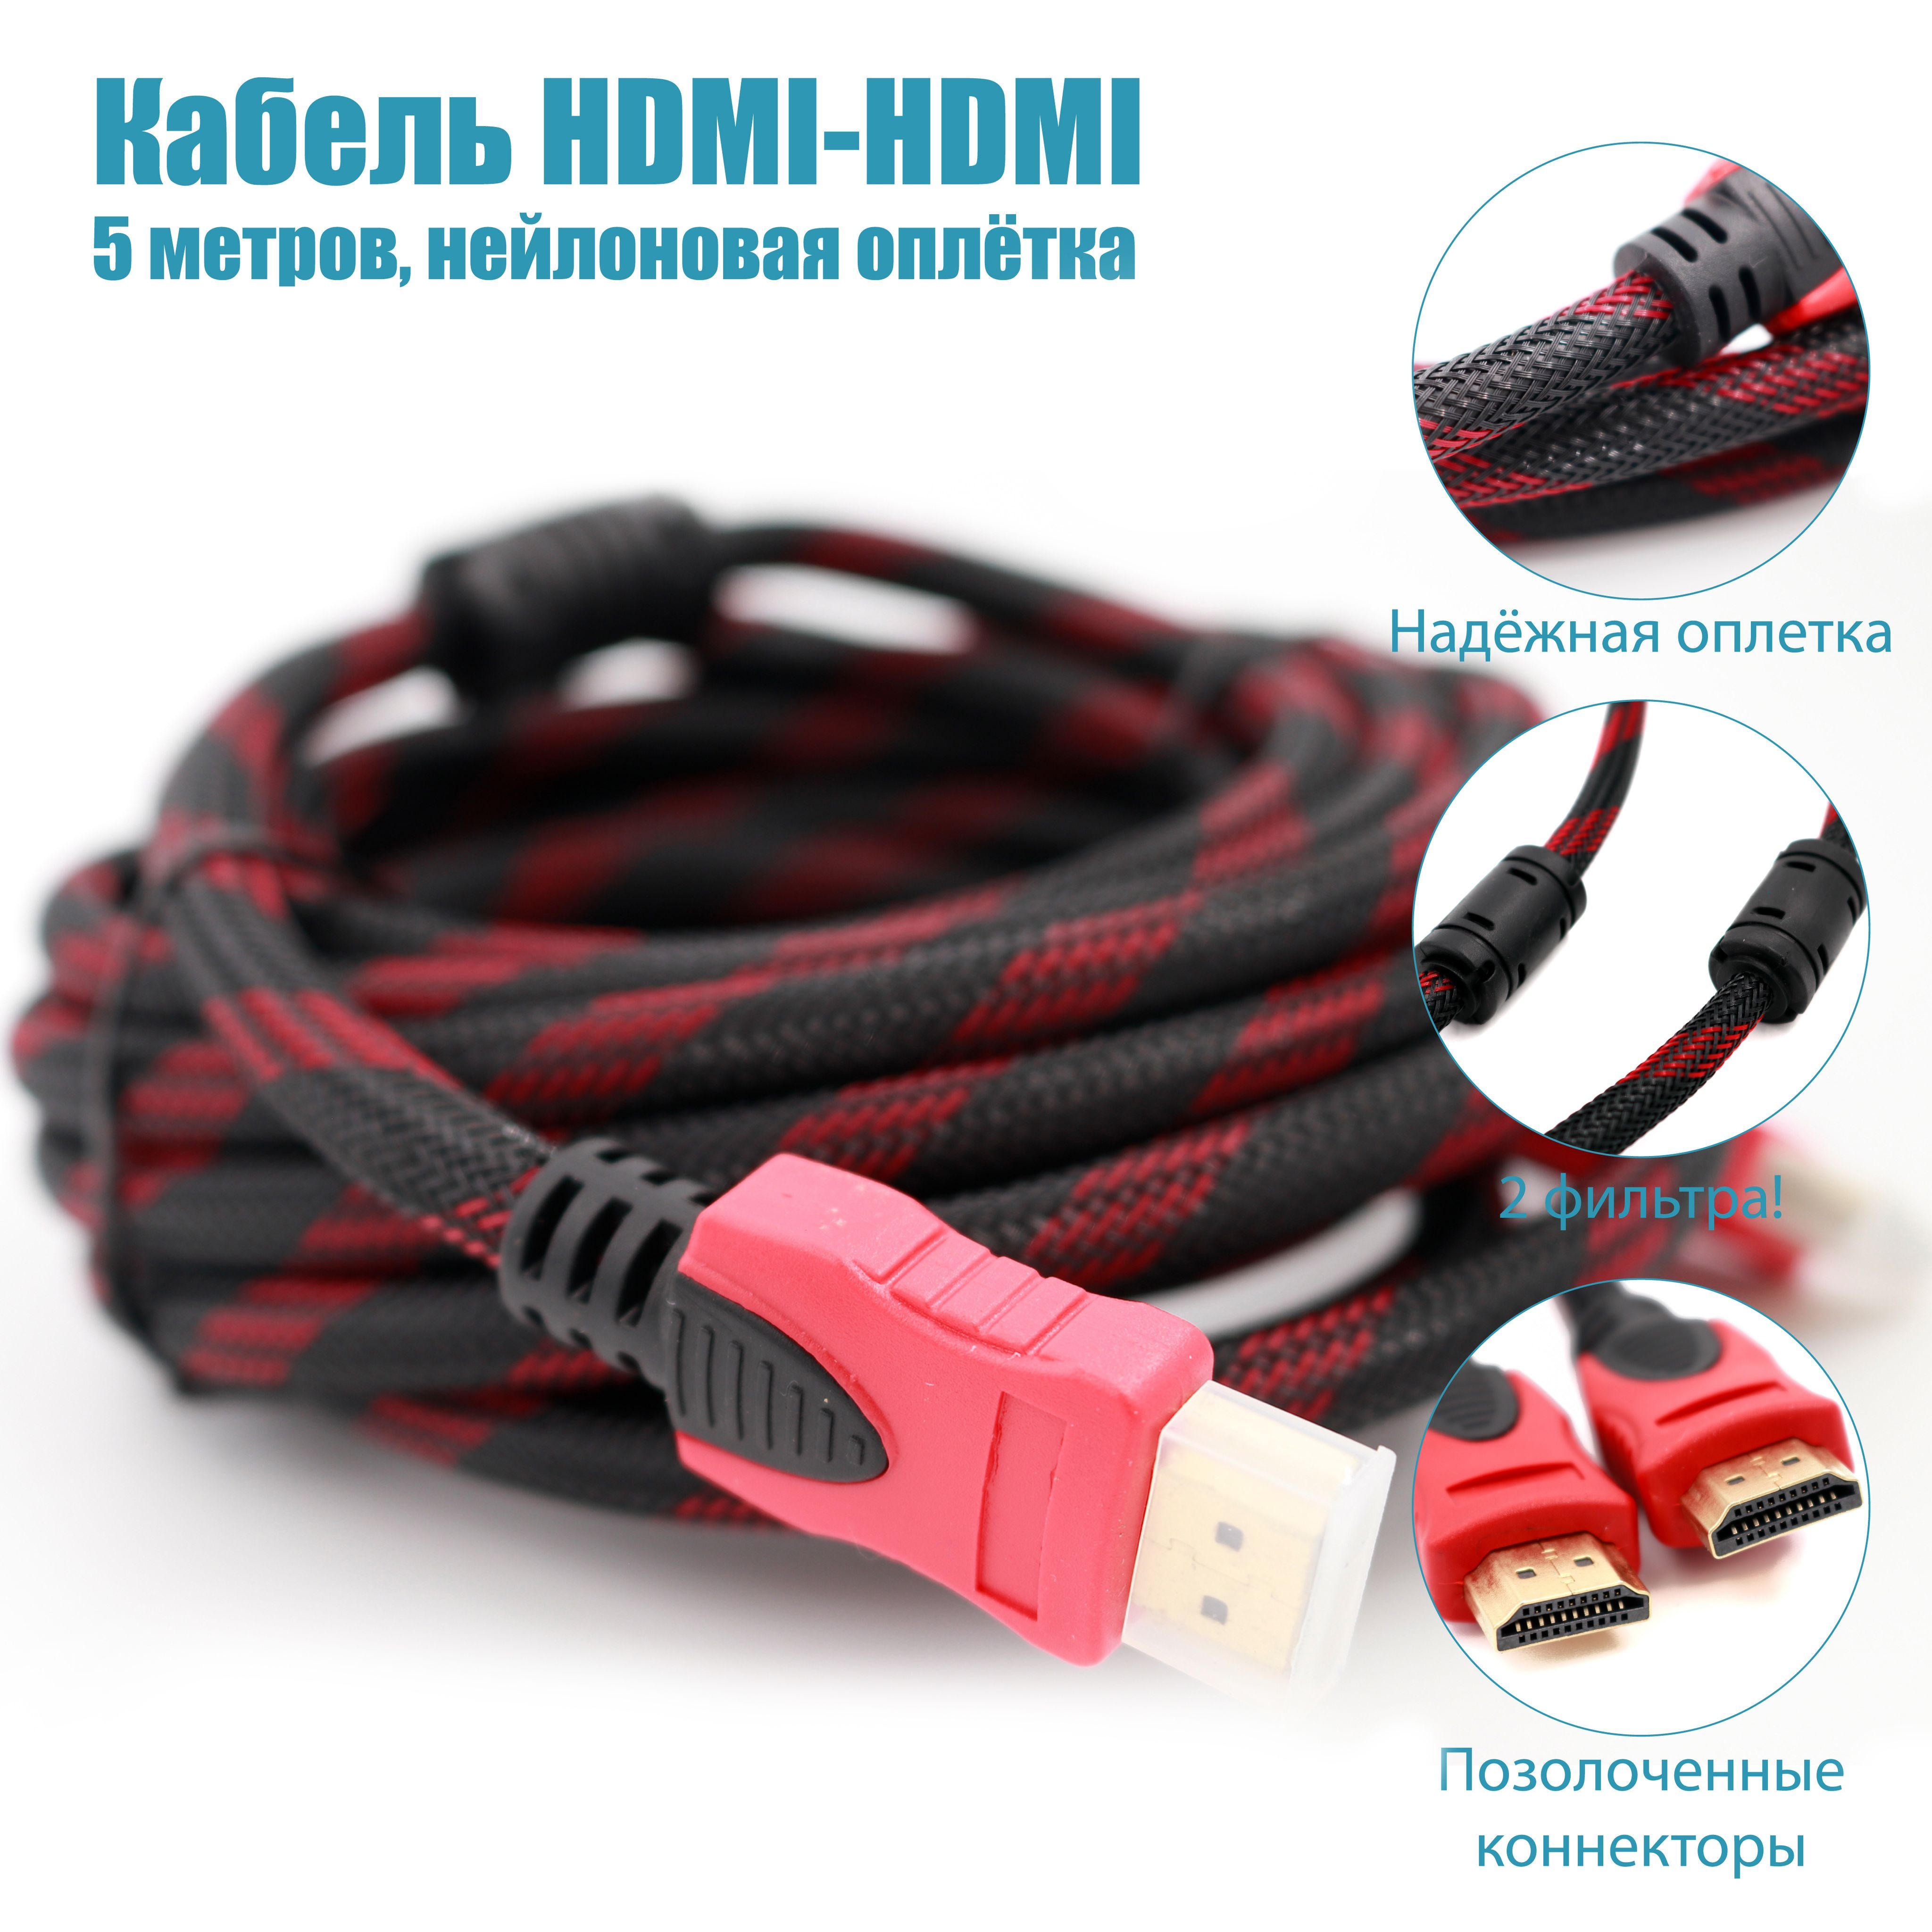 Как удлинить HDMI кабель